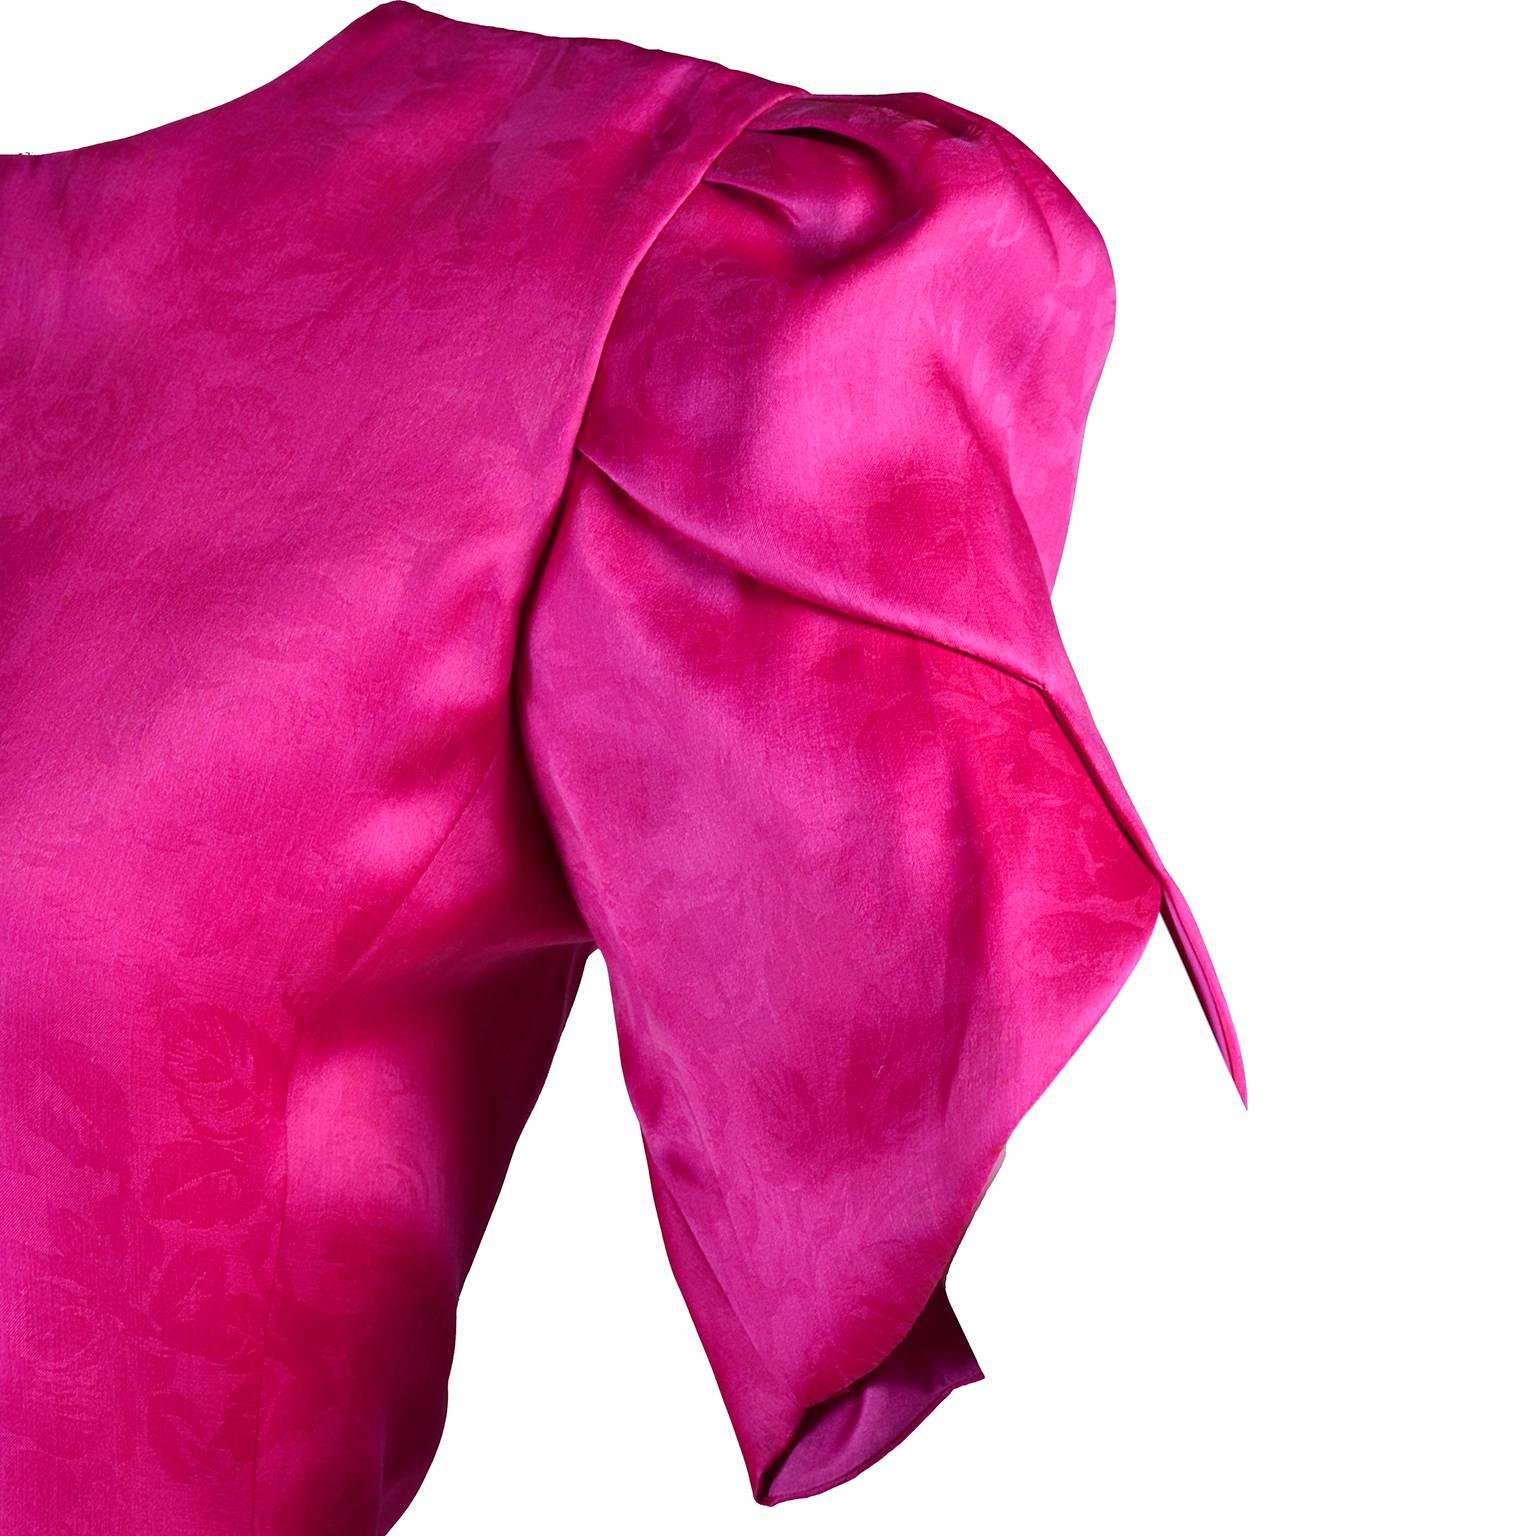 Dieses wunderschöne Seidenkleid von Carolina Herrera eignet sich hervorragend als Tageskleid für einen Hochzeitsgast oder als Kleid für die Mutter der Braut oder des Bräutigams,  oder ein perfektes Abendkleid.  Das Kleid ist aus einem rosafarbenen